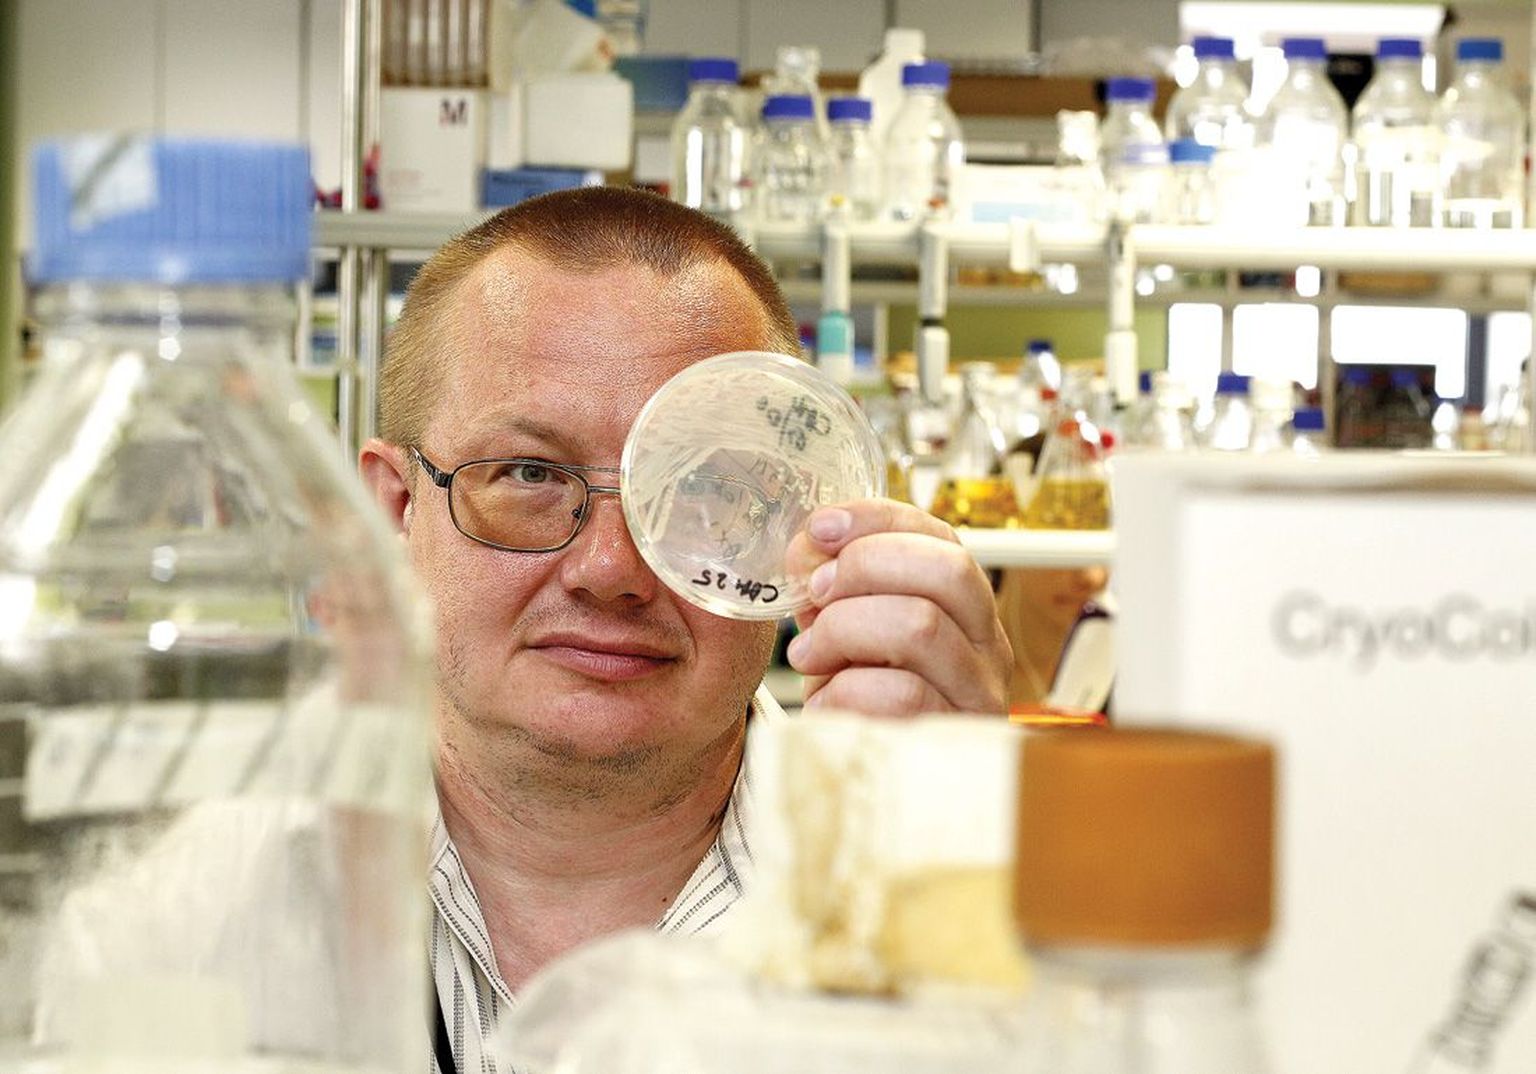 Professor 
Tanel Tenson Tartu ülikooli tehnoloogiainstituudi 
laboris 
teraselt 
silmitsemas üht inkubaatorist välja võetud Petri tassi bakteritega, mille arv soodsatel tingimustel kahekordistub iga poole tunni tagant.